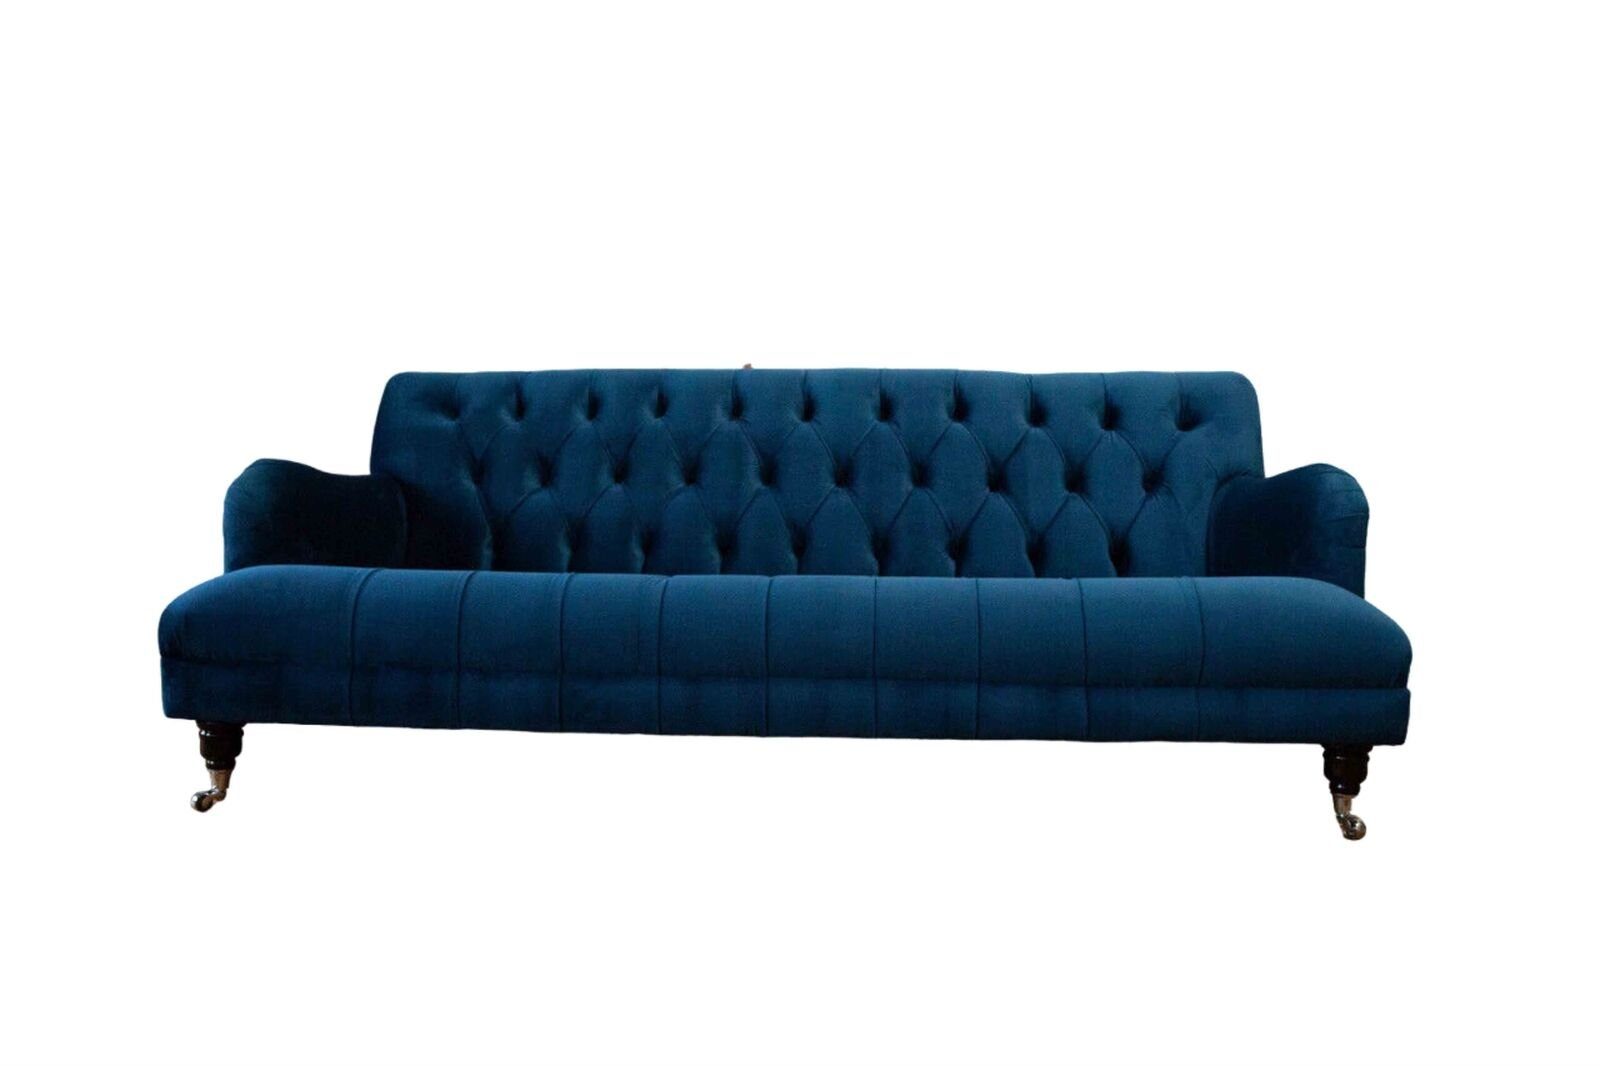 JVmoebel Sofa Designer Blauer Chesterfield Dreisitzer Luxus Polster Couch Sitzmöbel, Made in Europe